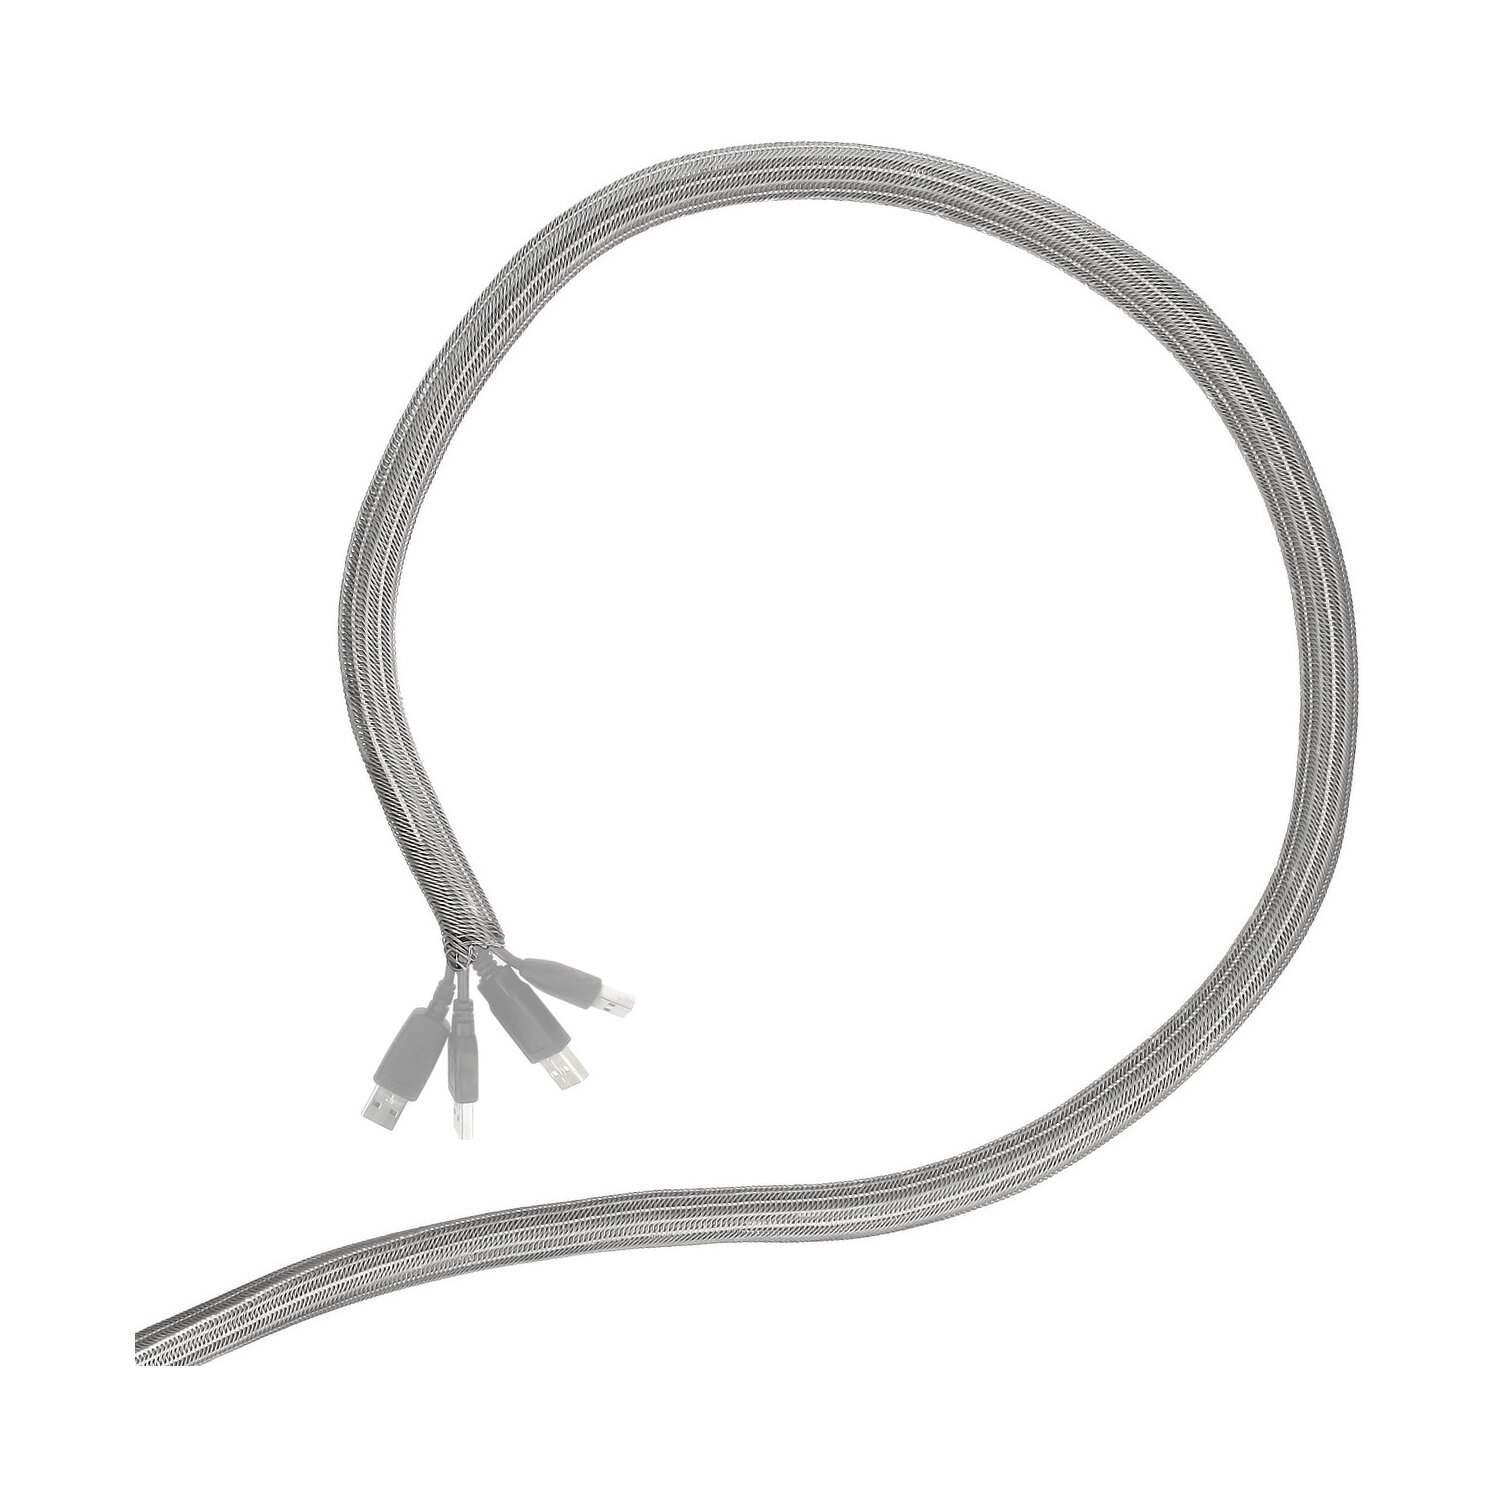 Minadax® gewobener Selbstschließender 1 Meter Profi Kabelschlauch Kabelkanal 16mm Innendurchmesser in grau für flexibles Kabelmanagement